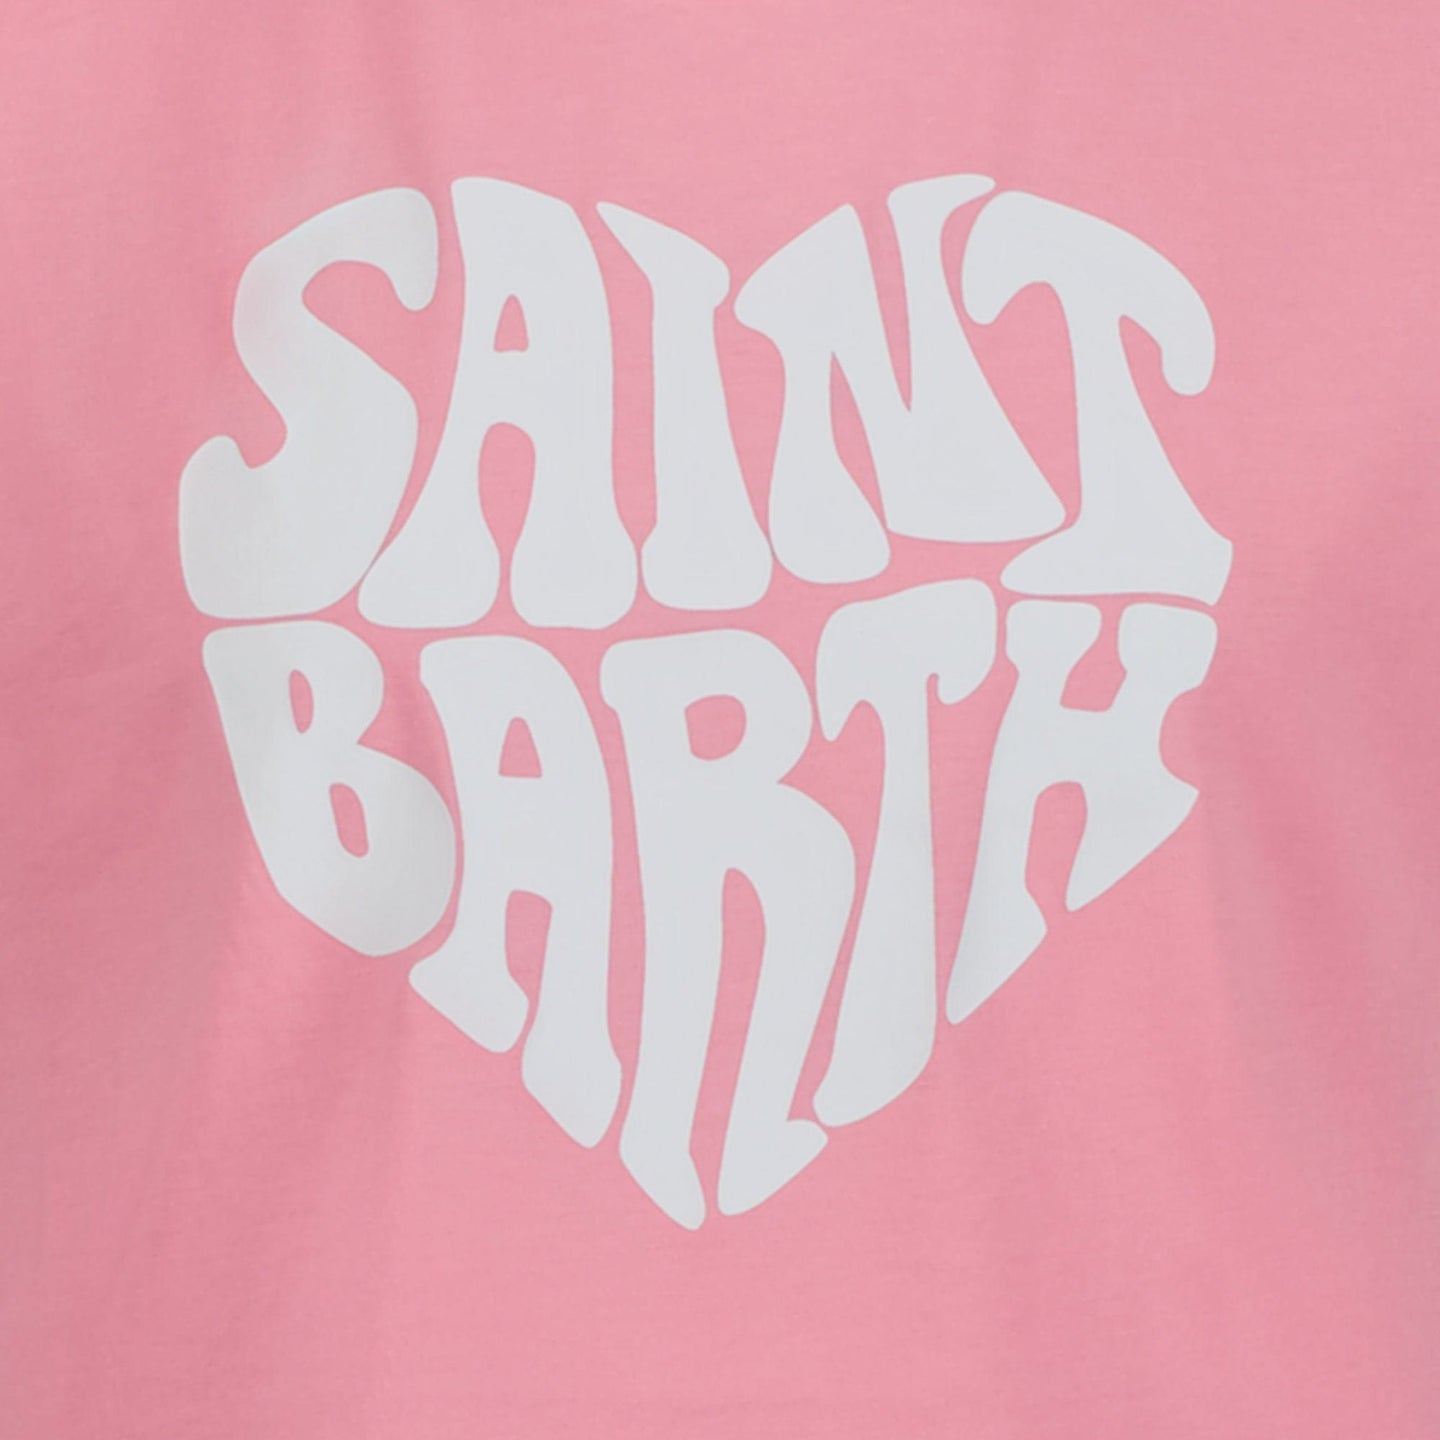 MC2 Saint Barth Kinder Meisjes T-shirt Licht Roze 2Y